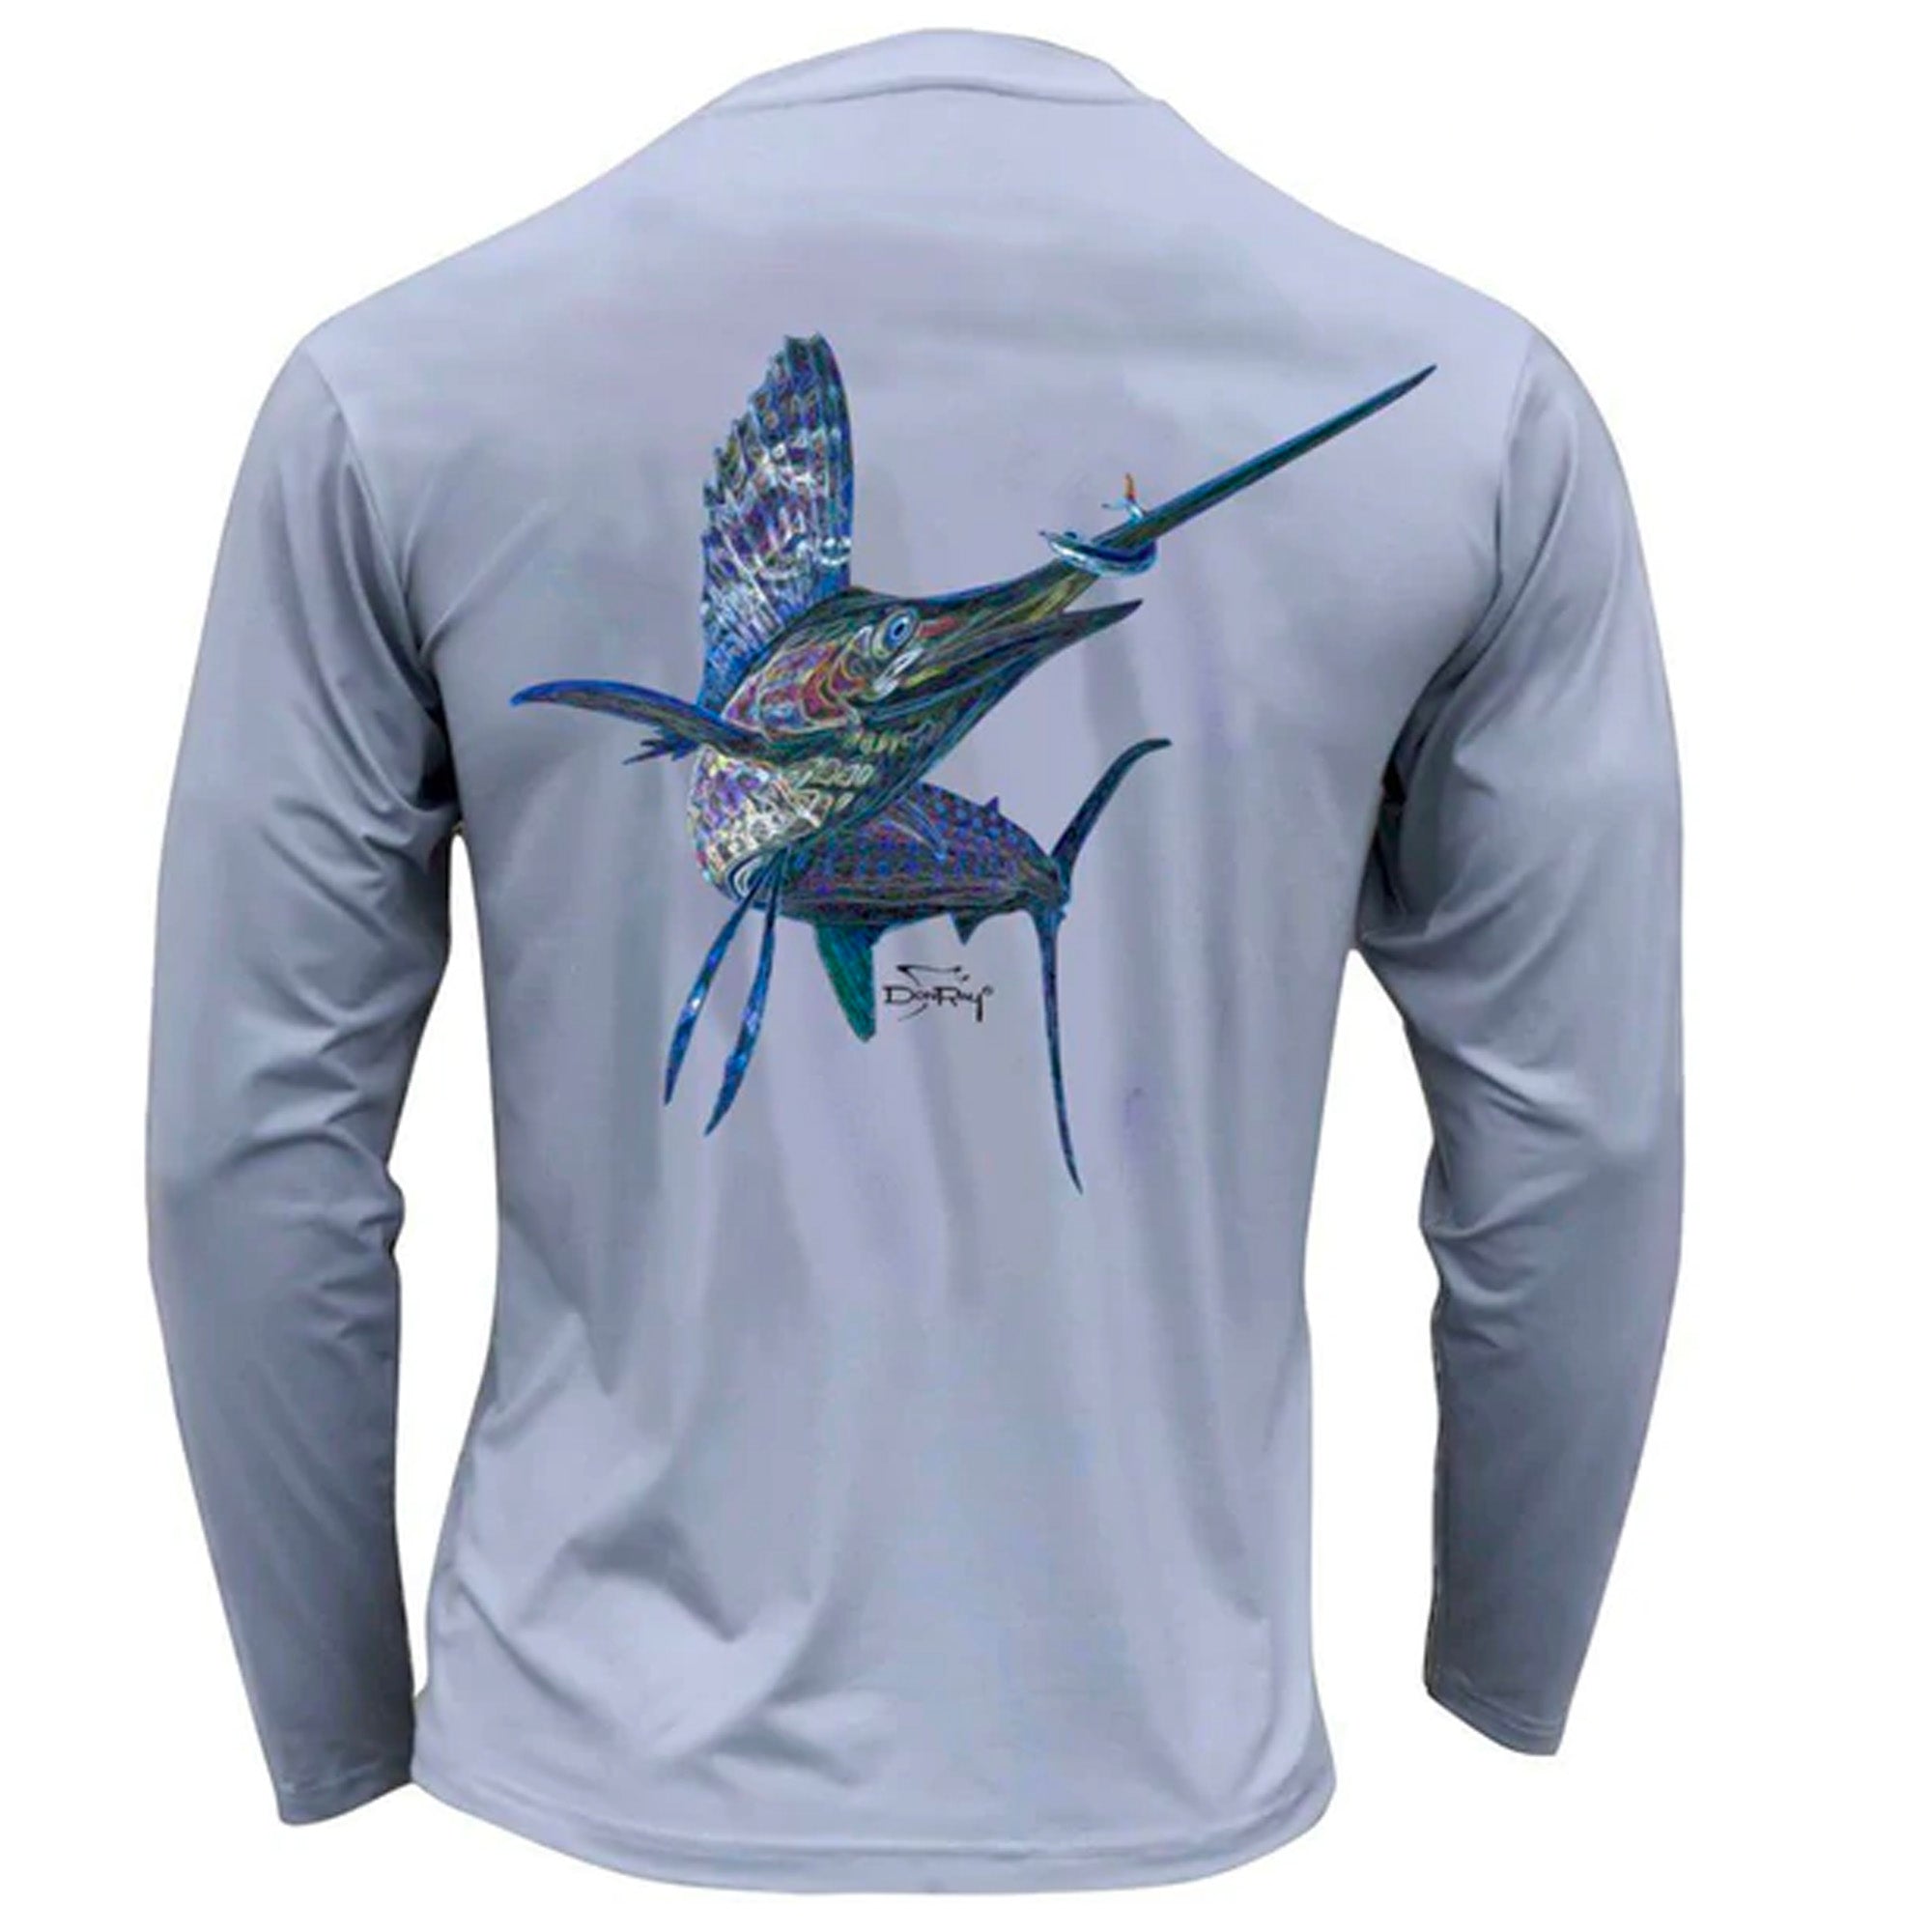 Tormenter Performance Men's Fishing Shirt, Electrified Sailfish Gray / XL